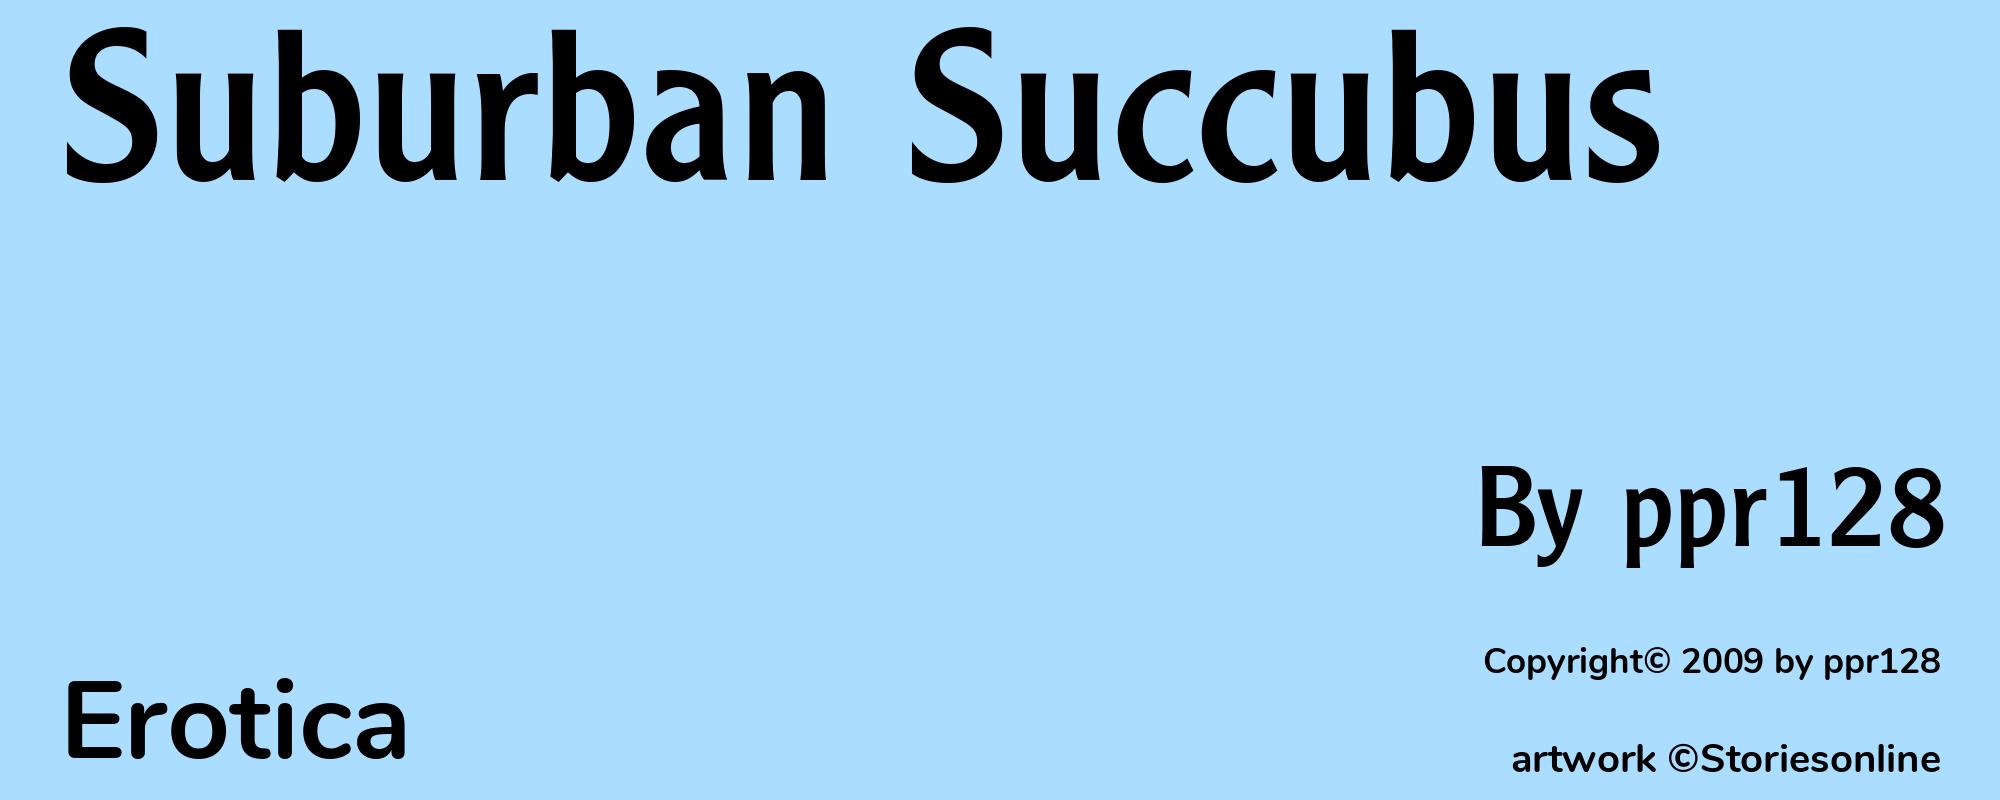 Suburban Succubus - Cover